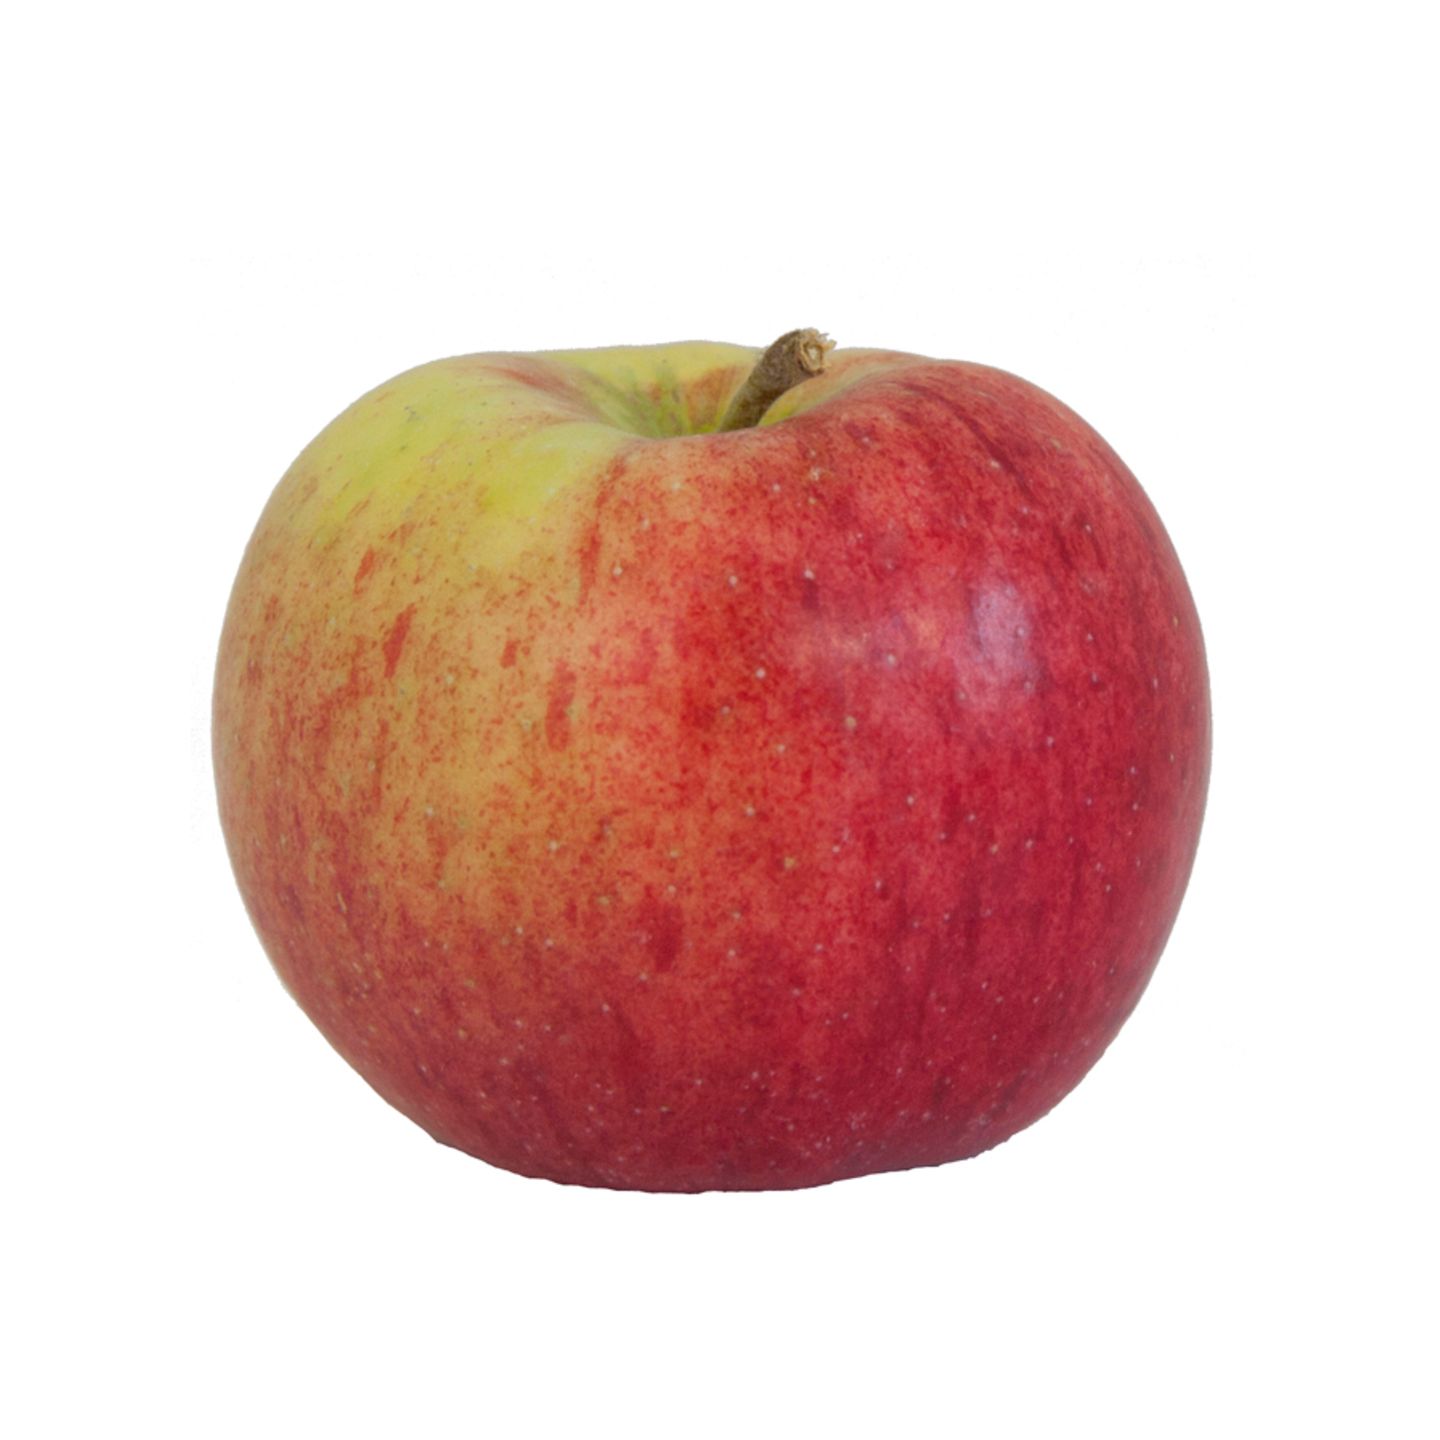 Kleines Apfel-ABC: 10 Apfelsorten.